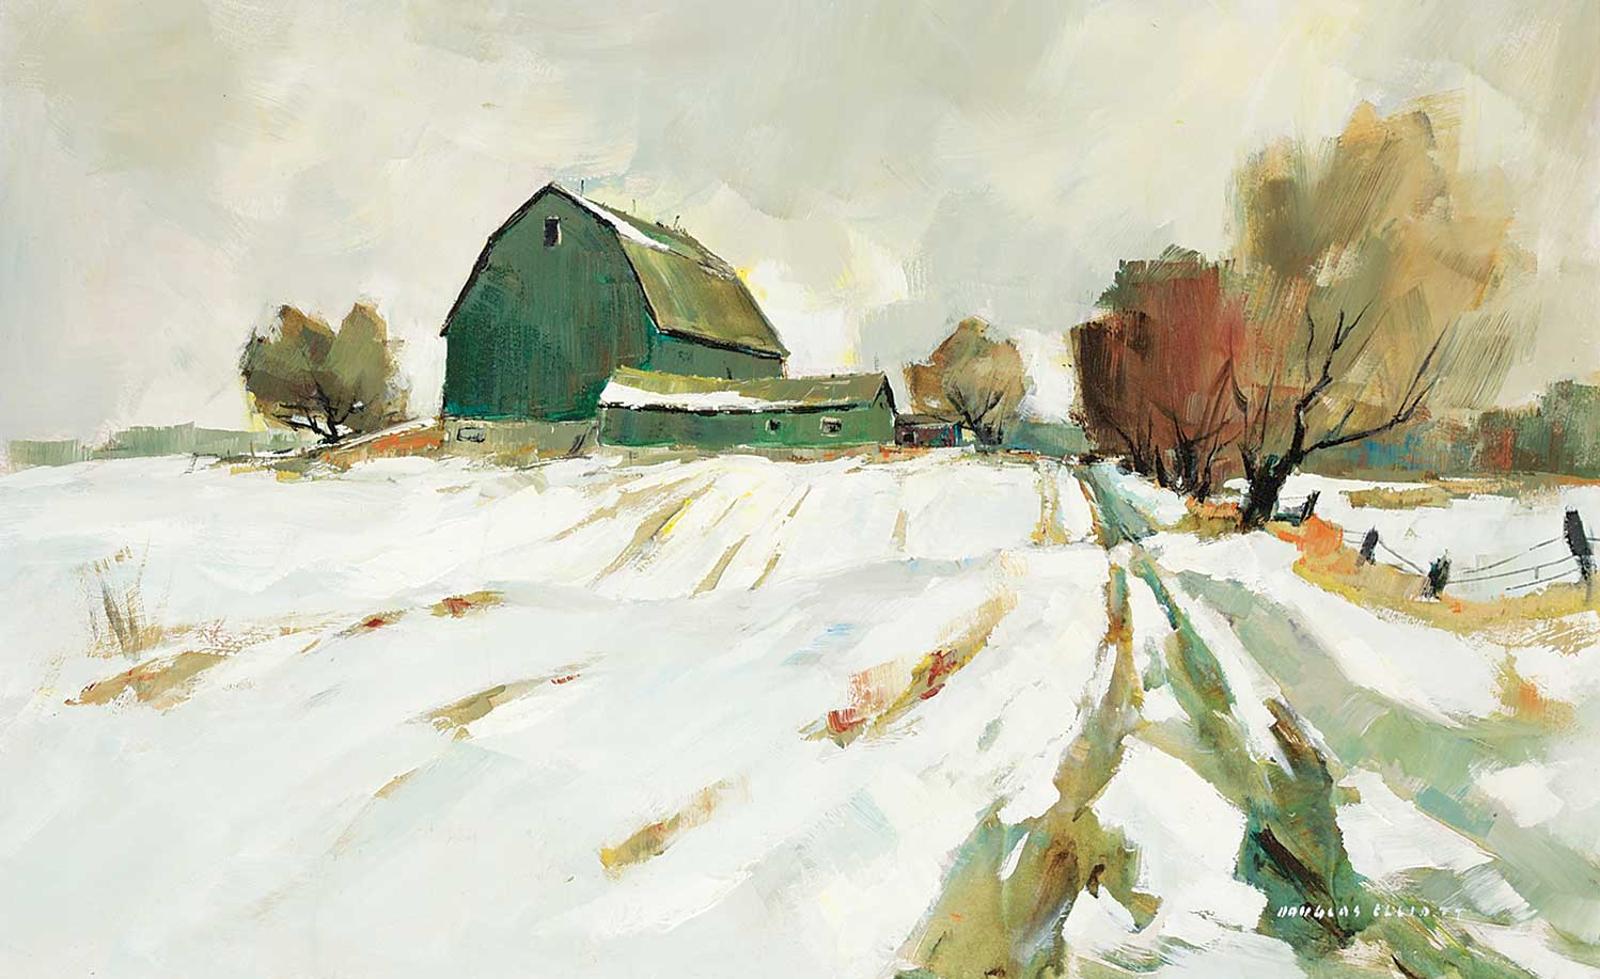 Douglas Ferfguson Elliott (1916-2012) - Untitled - A Snowy Road to the Farm